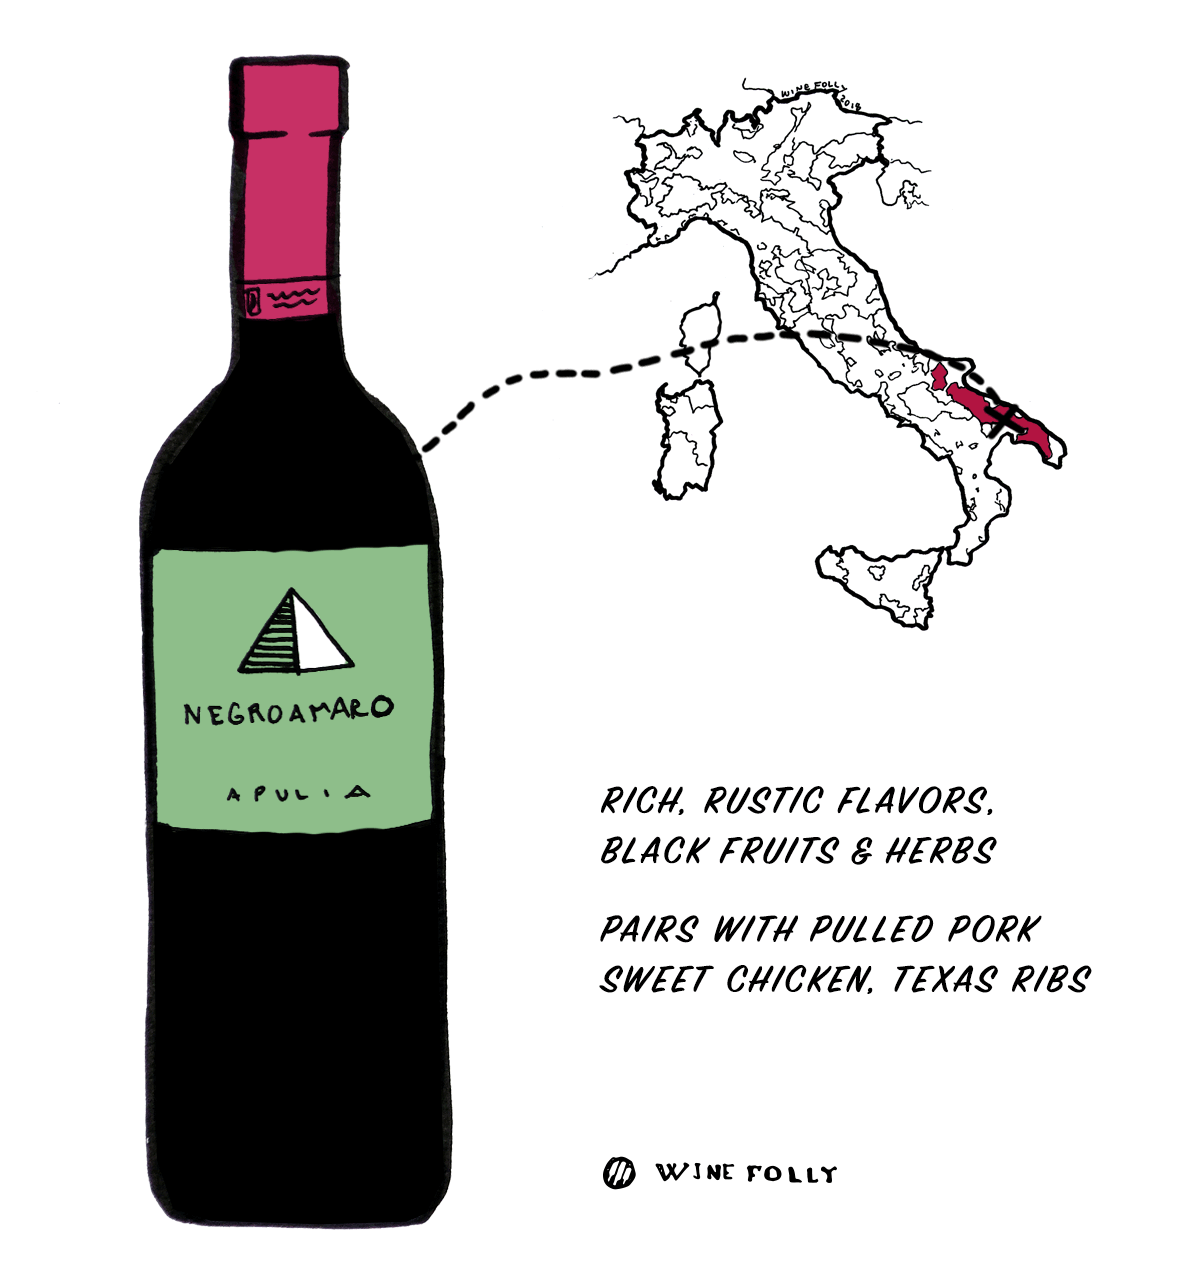 Червено вино Negroamaro от Италия - Чудесен избор за начинаещи в италианско вино - Илюстрация от Wine Folly